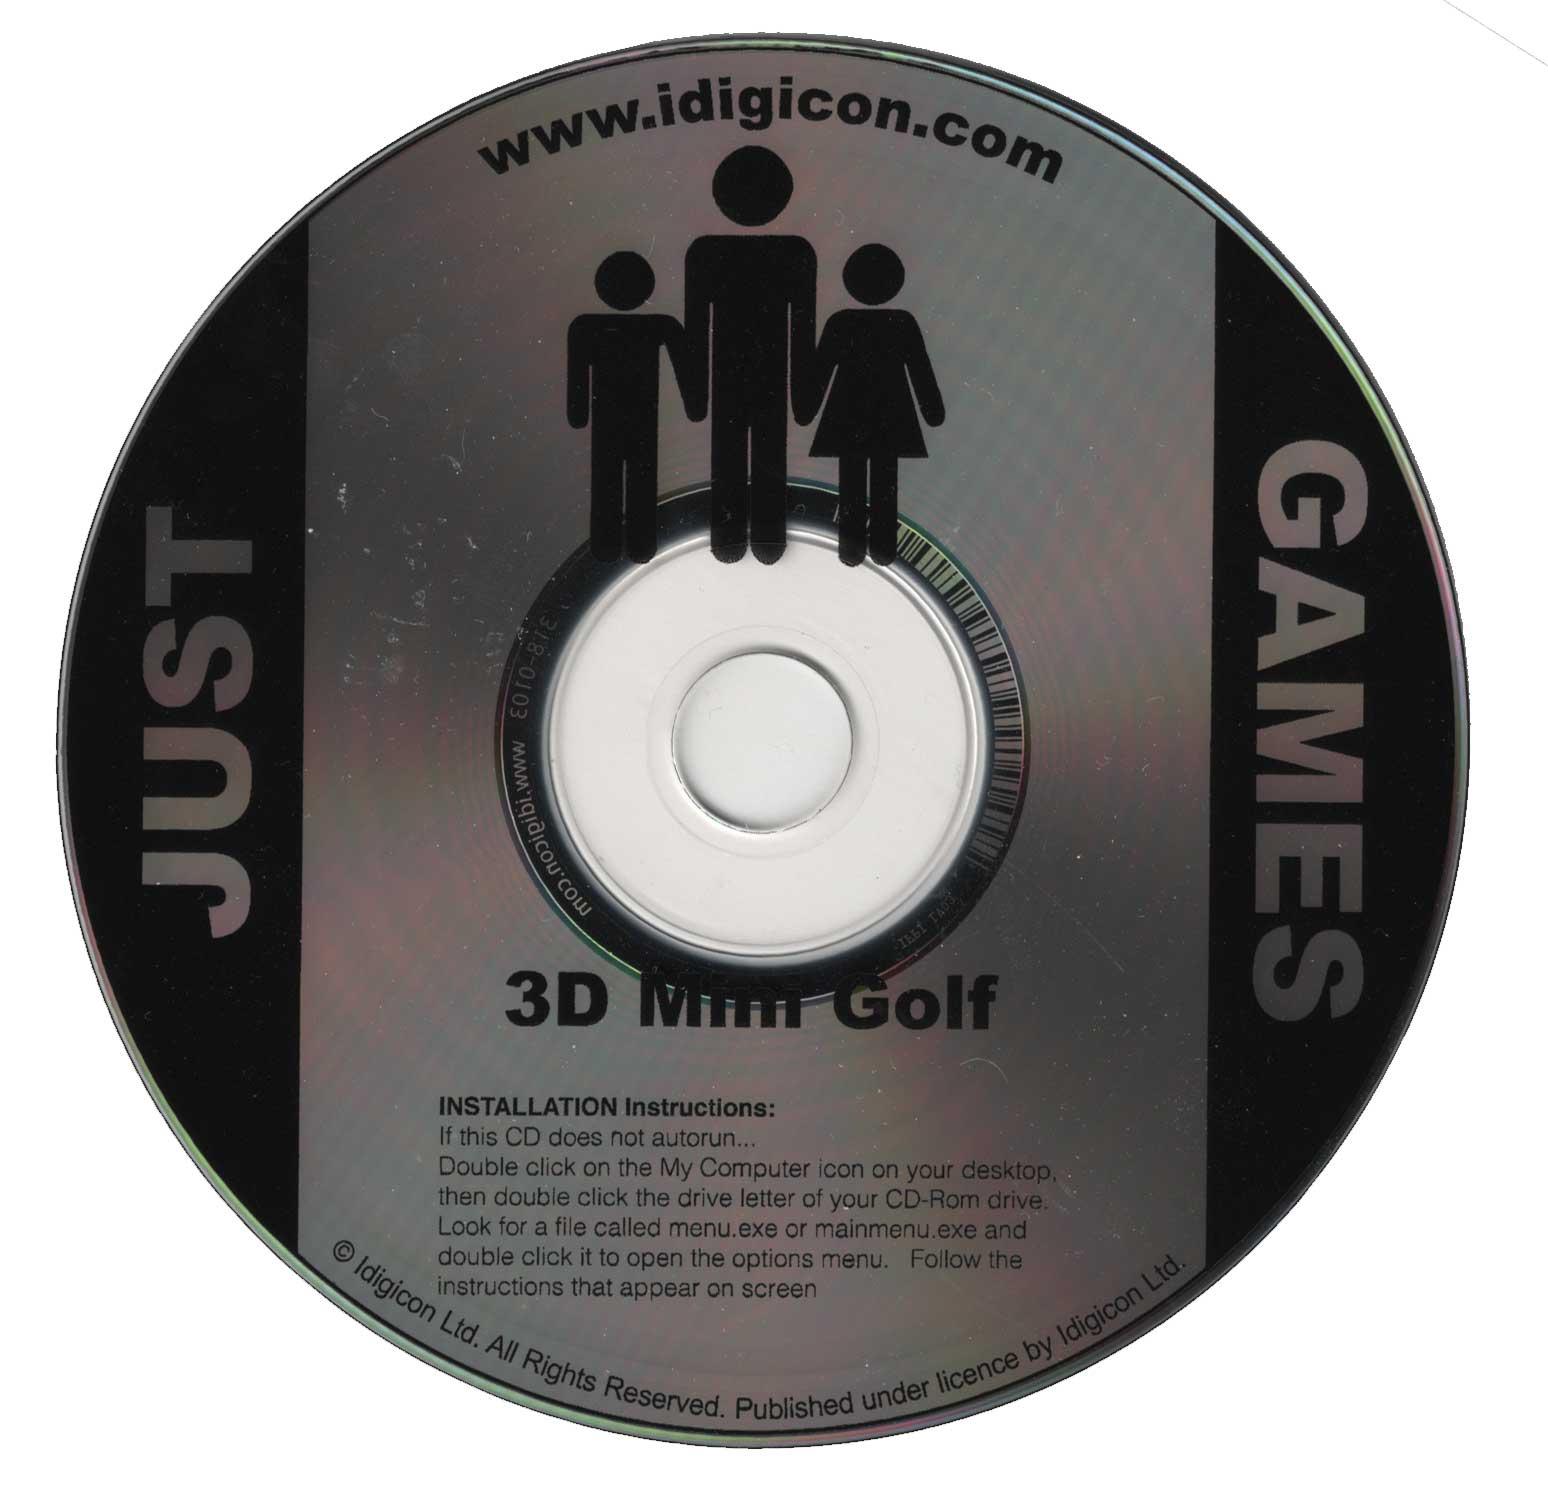 3D Mini Golf - Classic Windows PC Game